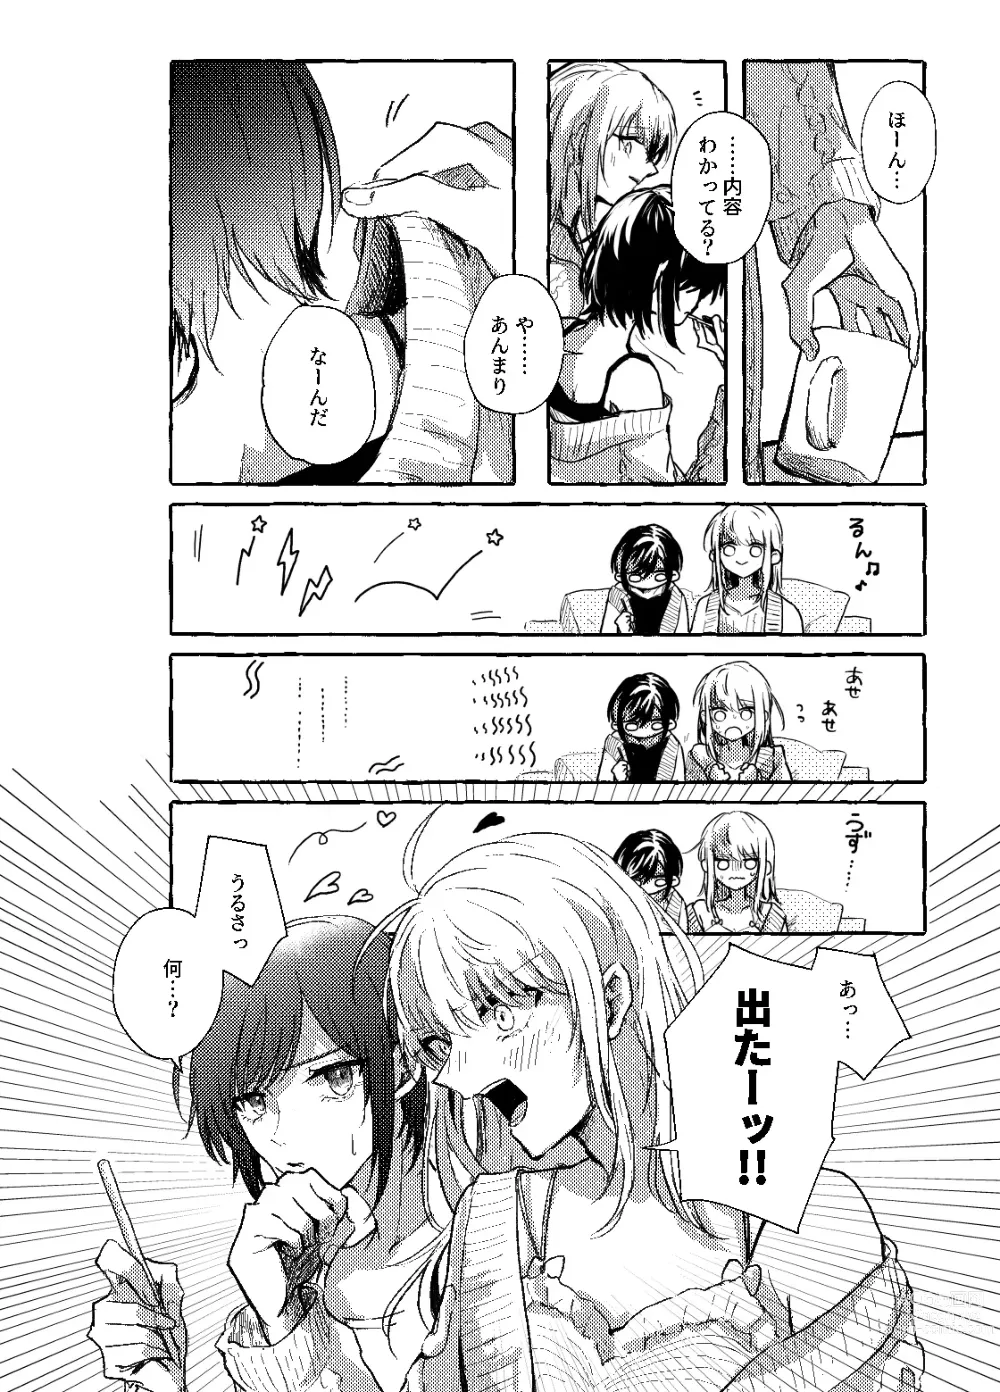 Page 5 of doujinshi Hakoniwa no Naka no Kimi